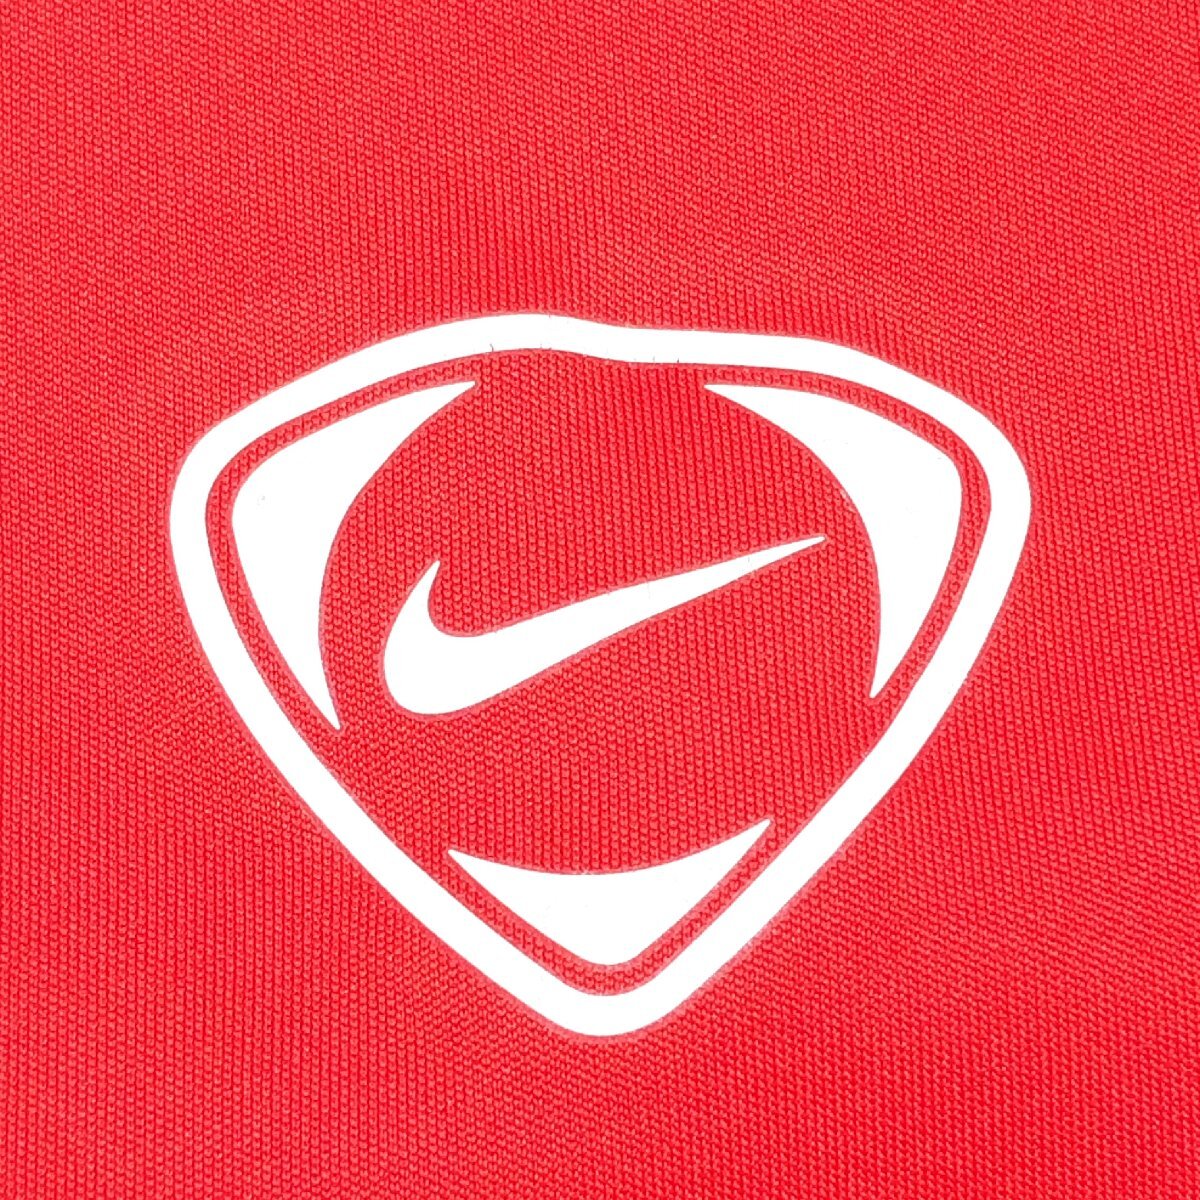 NIKE ナイキ NikeFIT DRY ロゴプリント 吸水速乾 ドライ シャツ M 赤 レッド Tシャツ ロンT 野球 ソフトボール スポーツウェア メンズ 紳士_画像4